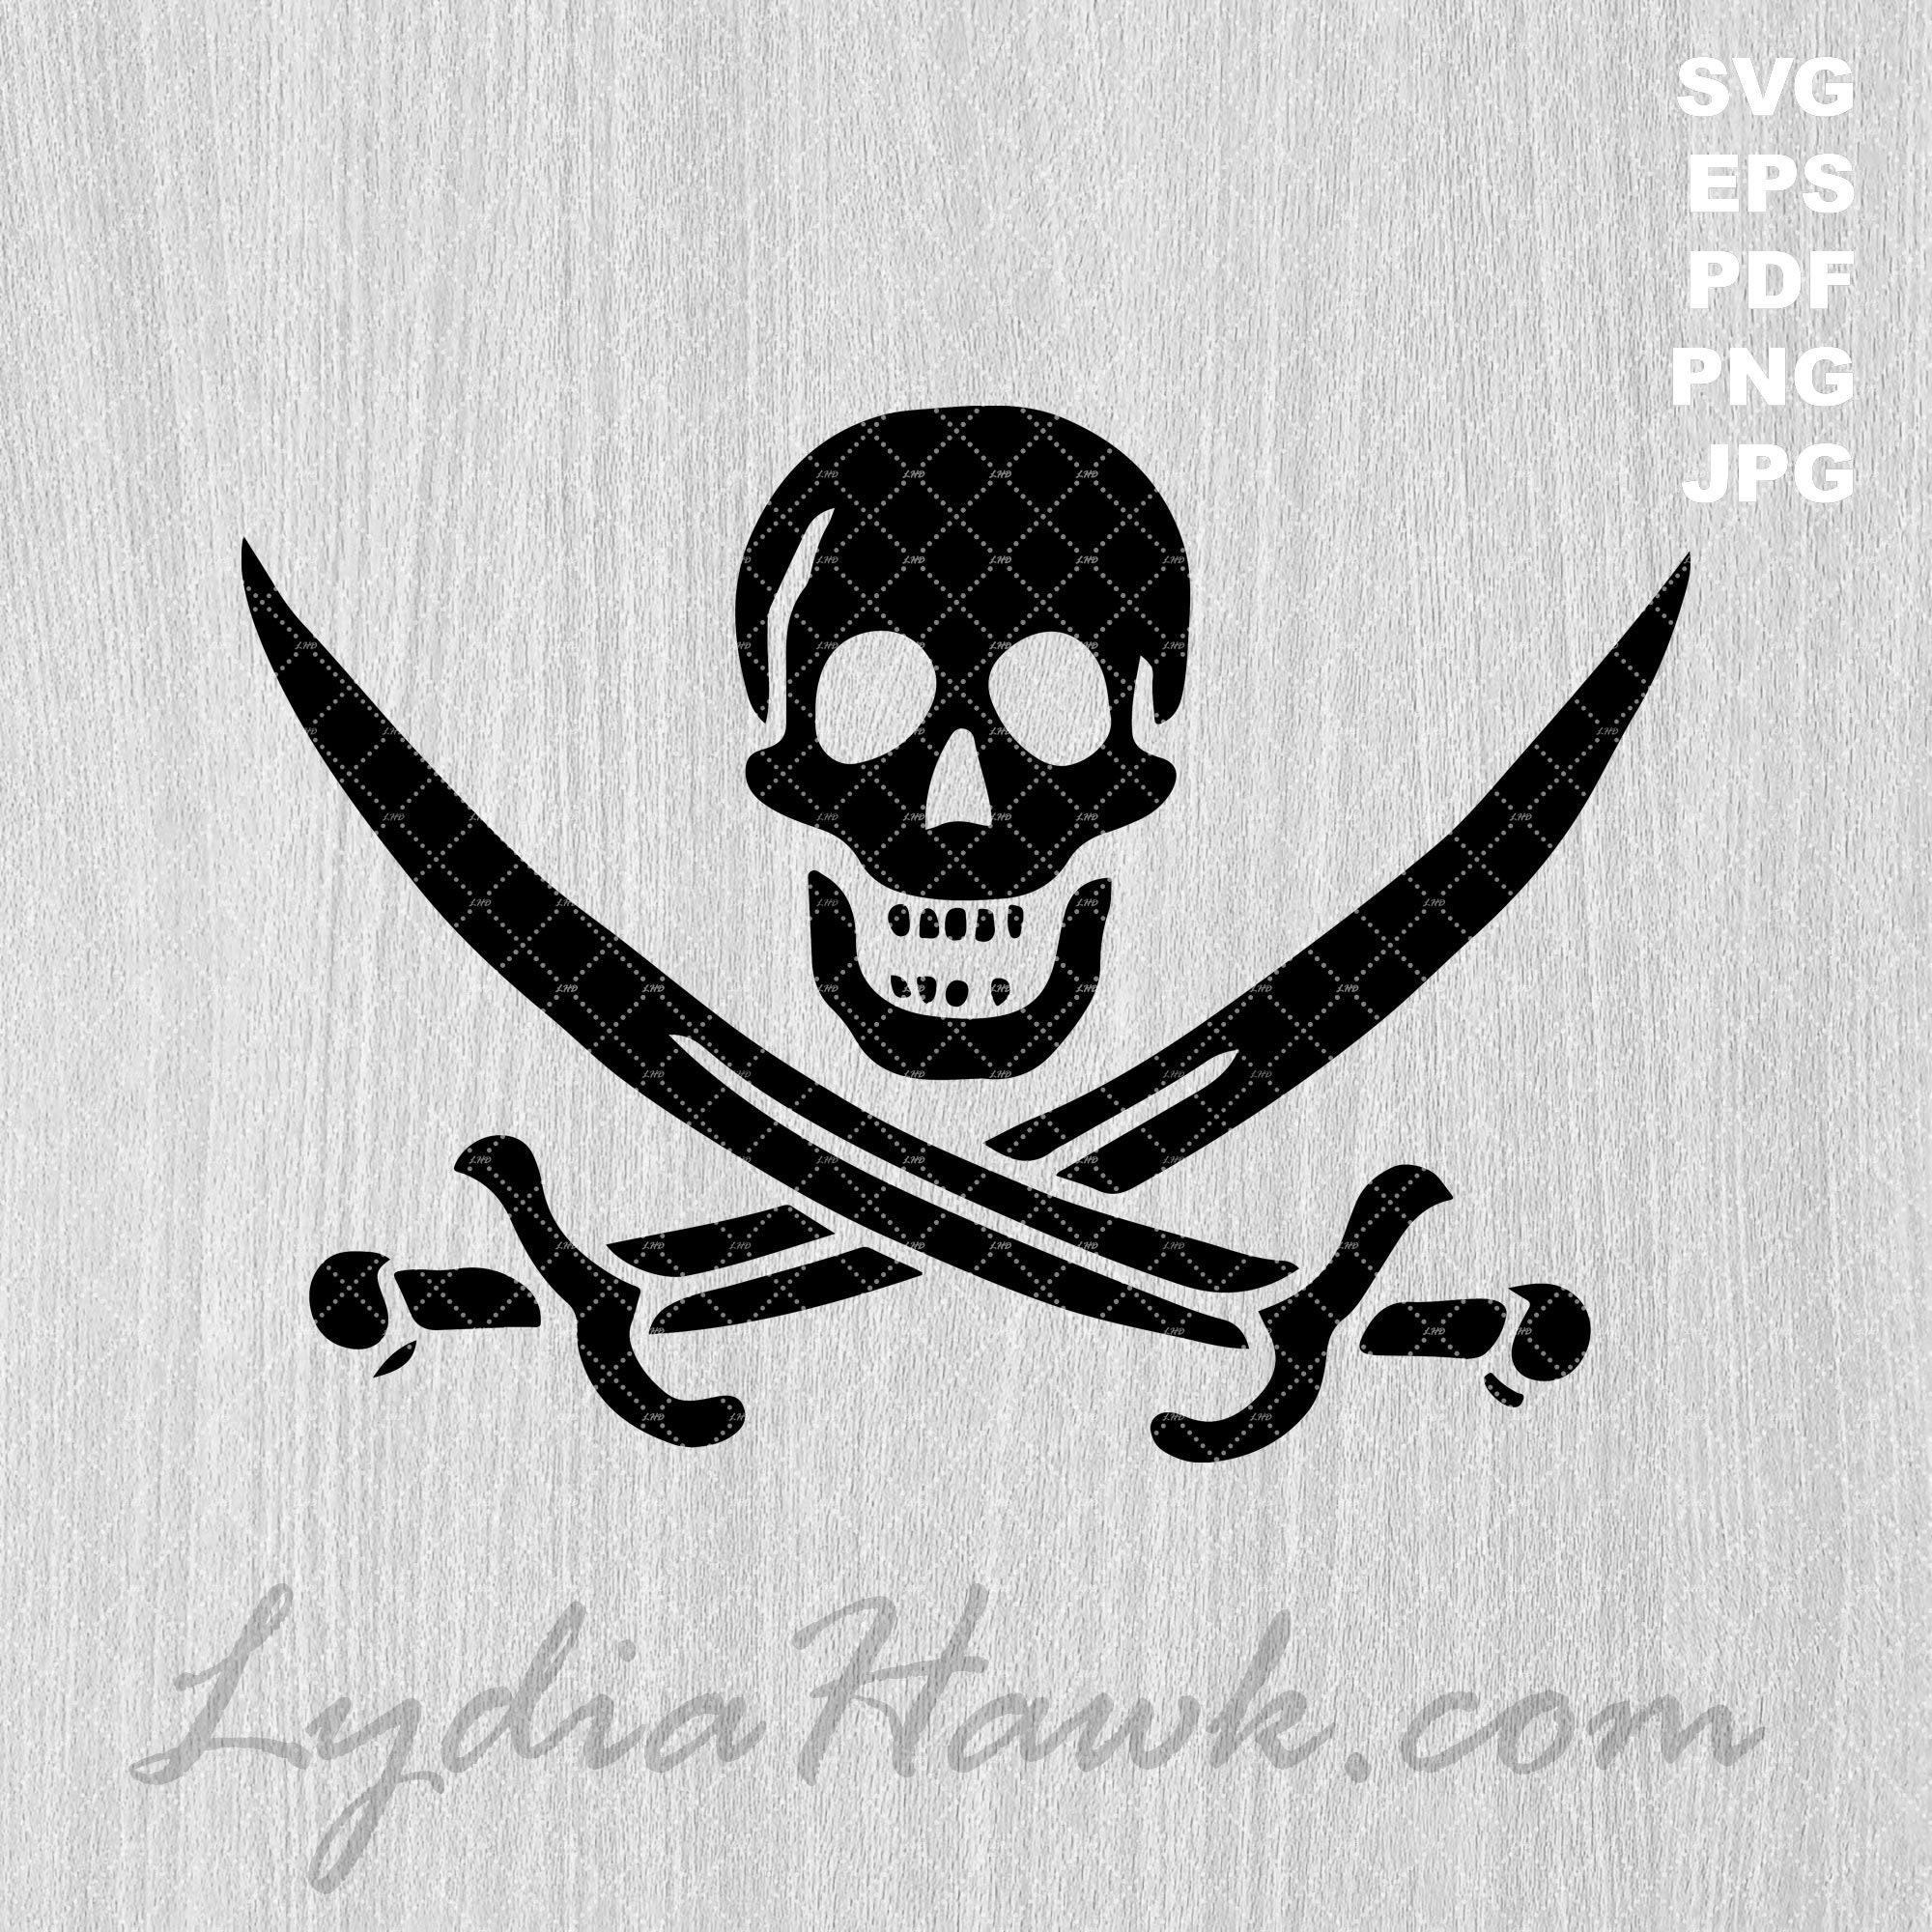 El diseño usado en la bandera pirata no es inglés. Y podría ser español…